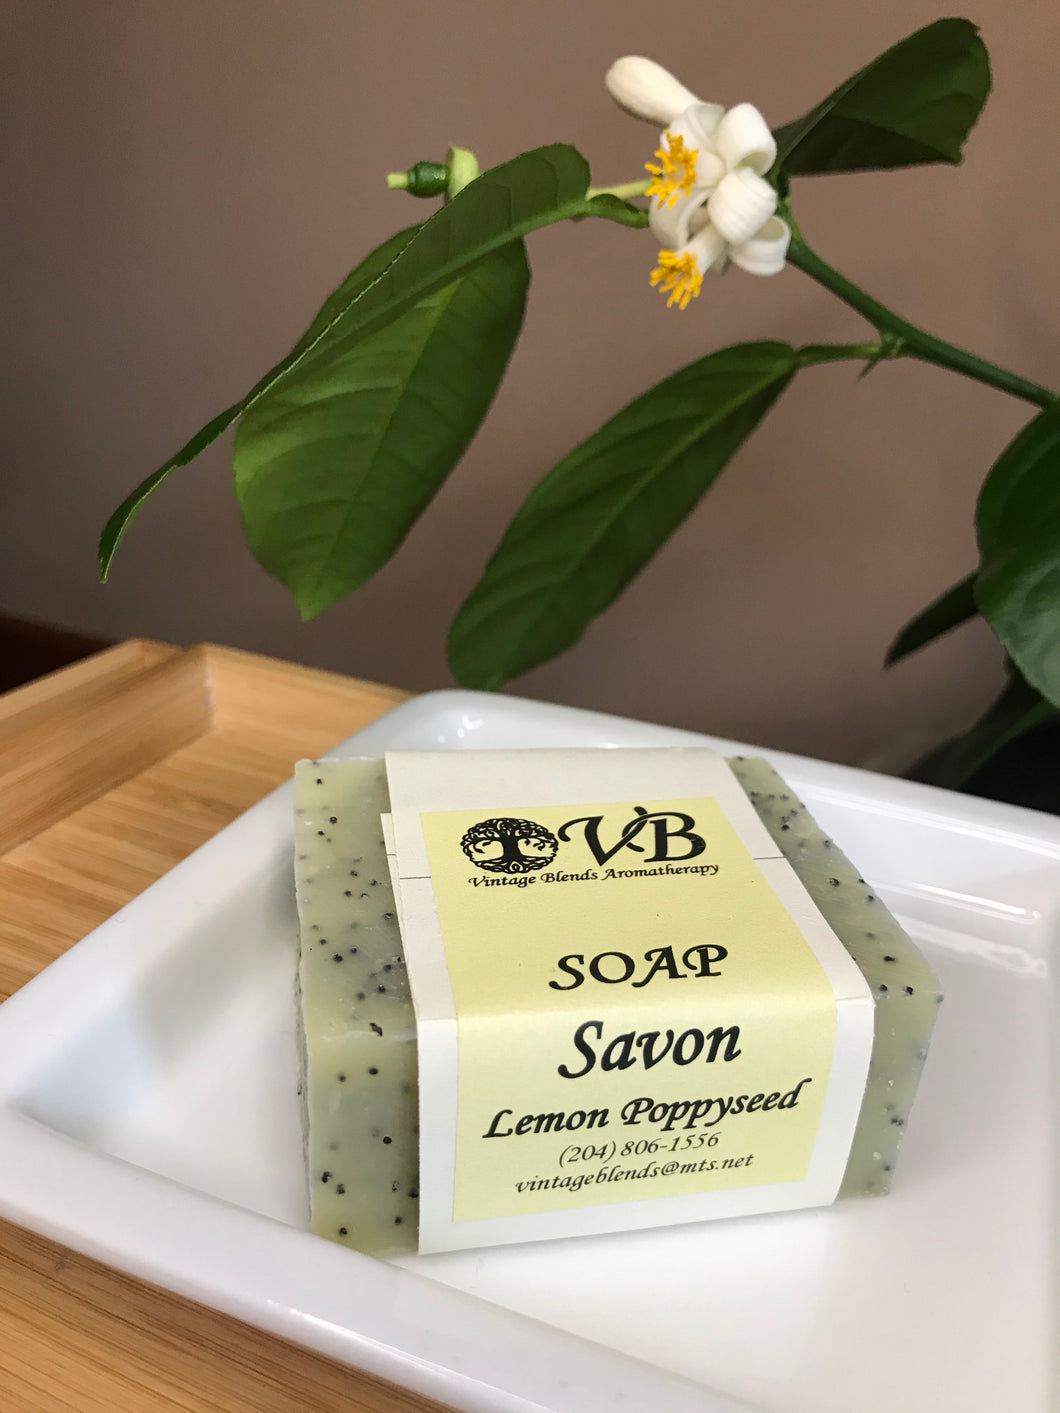 Lemon Poppyseed soap